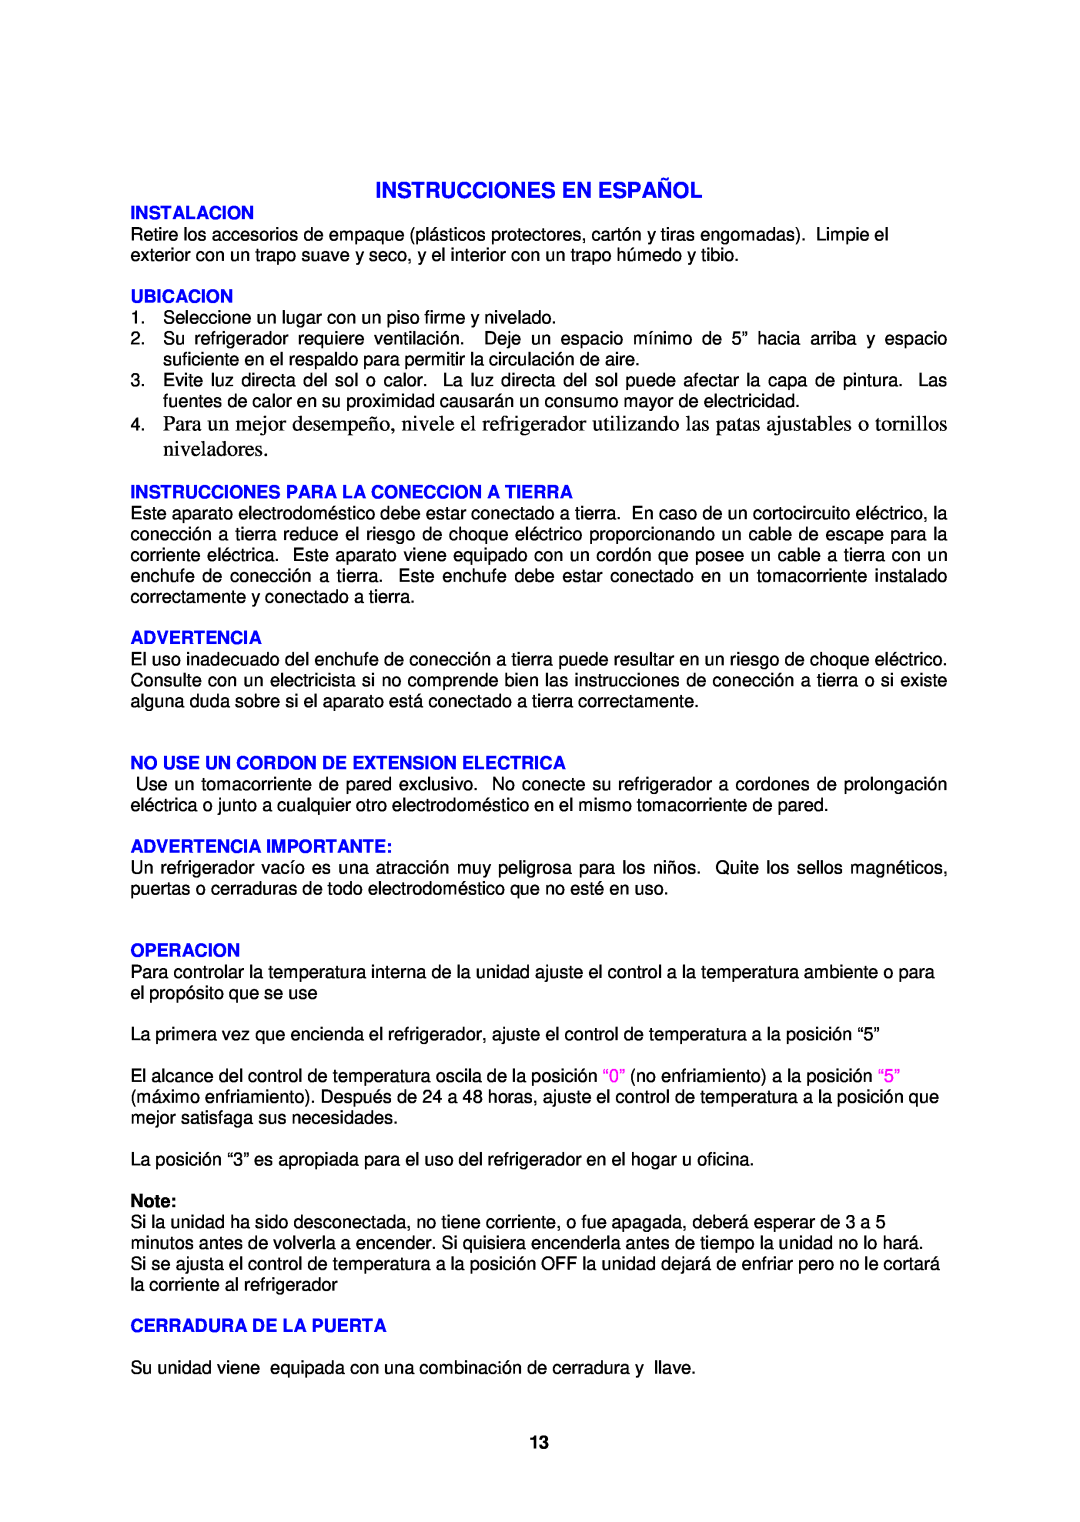 Avanti BCA4560W-2 Instrucciones En Español, Instalacion, Ubicacion, Instrucciones Para La Coneccion A Tierra, Advertencia 